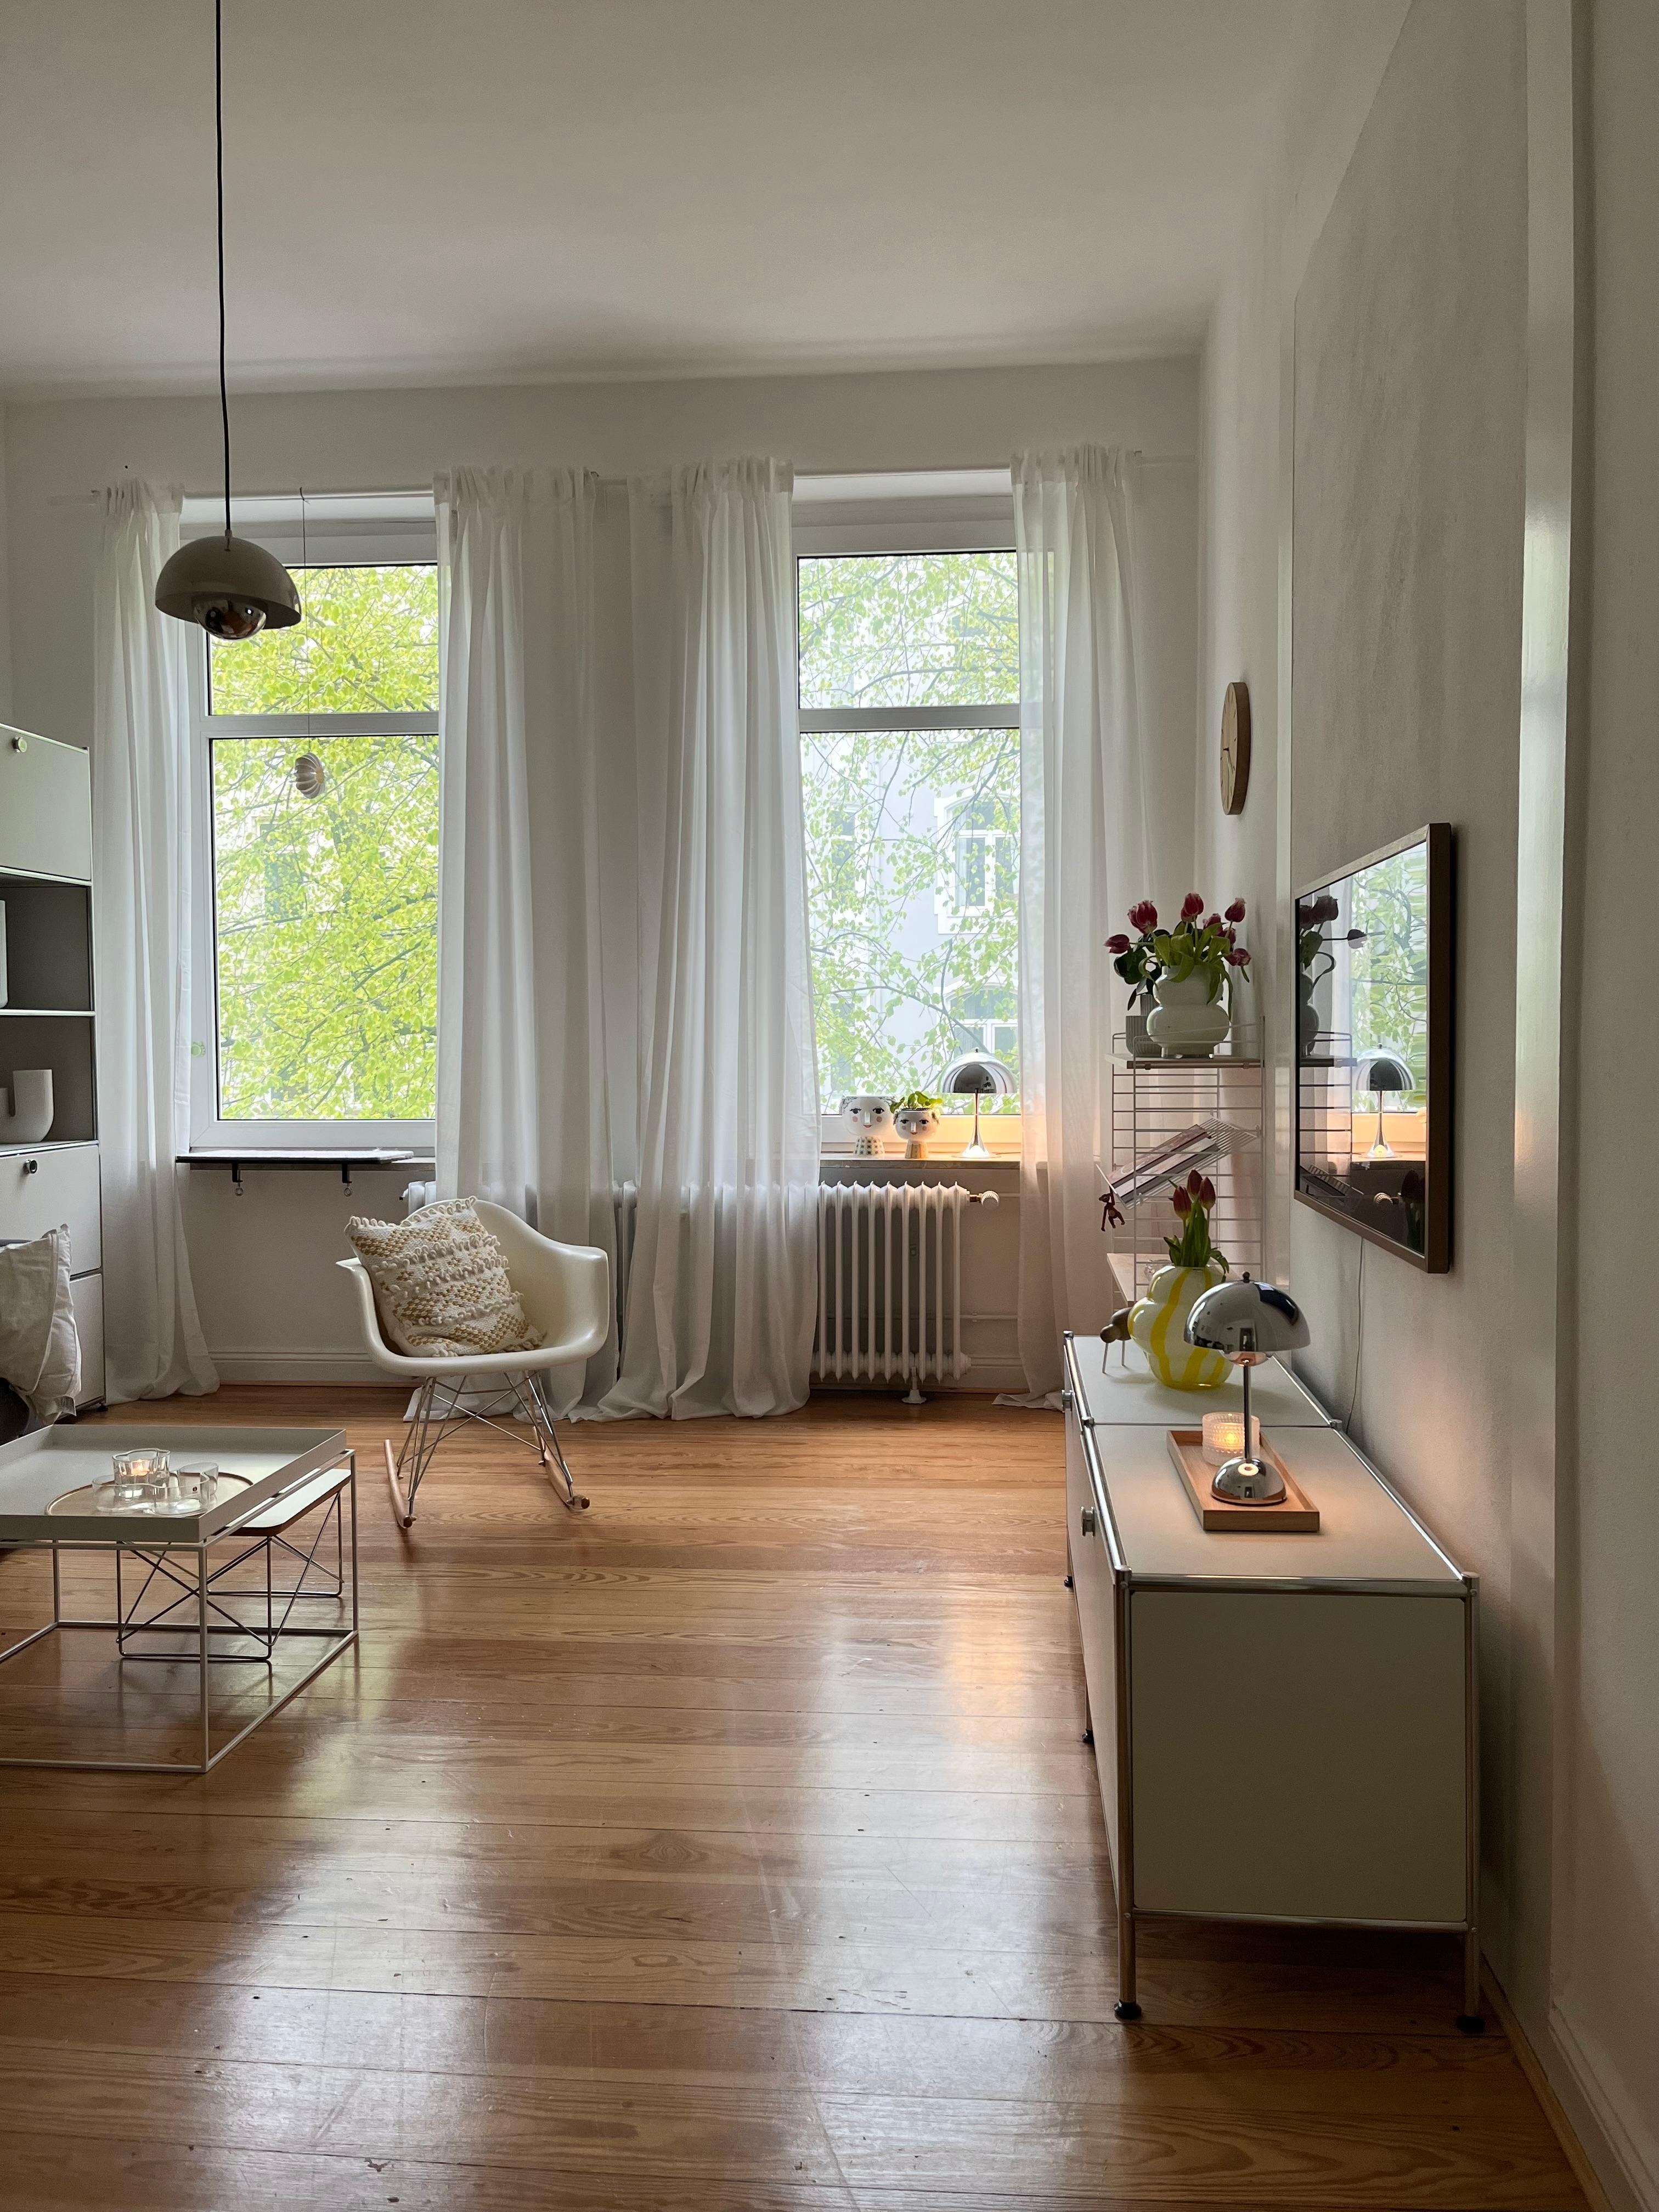 #wohnzimmer #altbauliebe #skandinavischwohnen #hygge #danishdesign #designlover